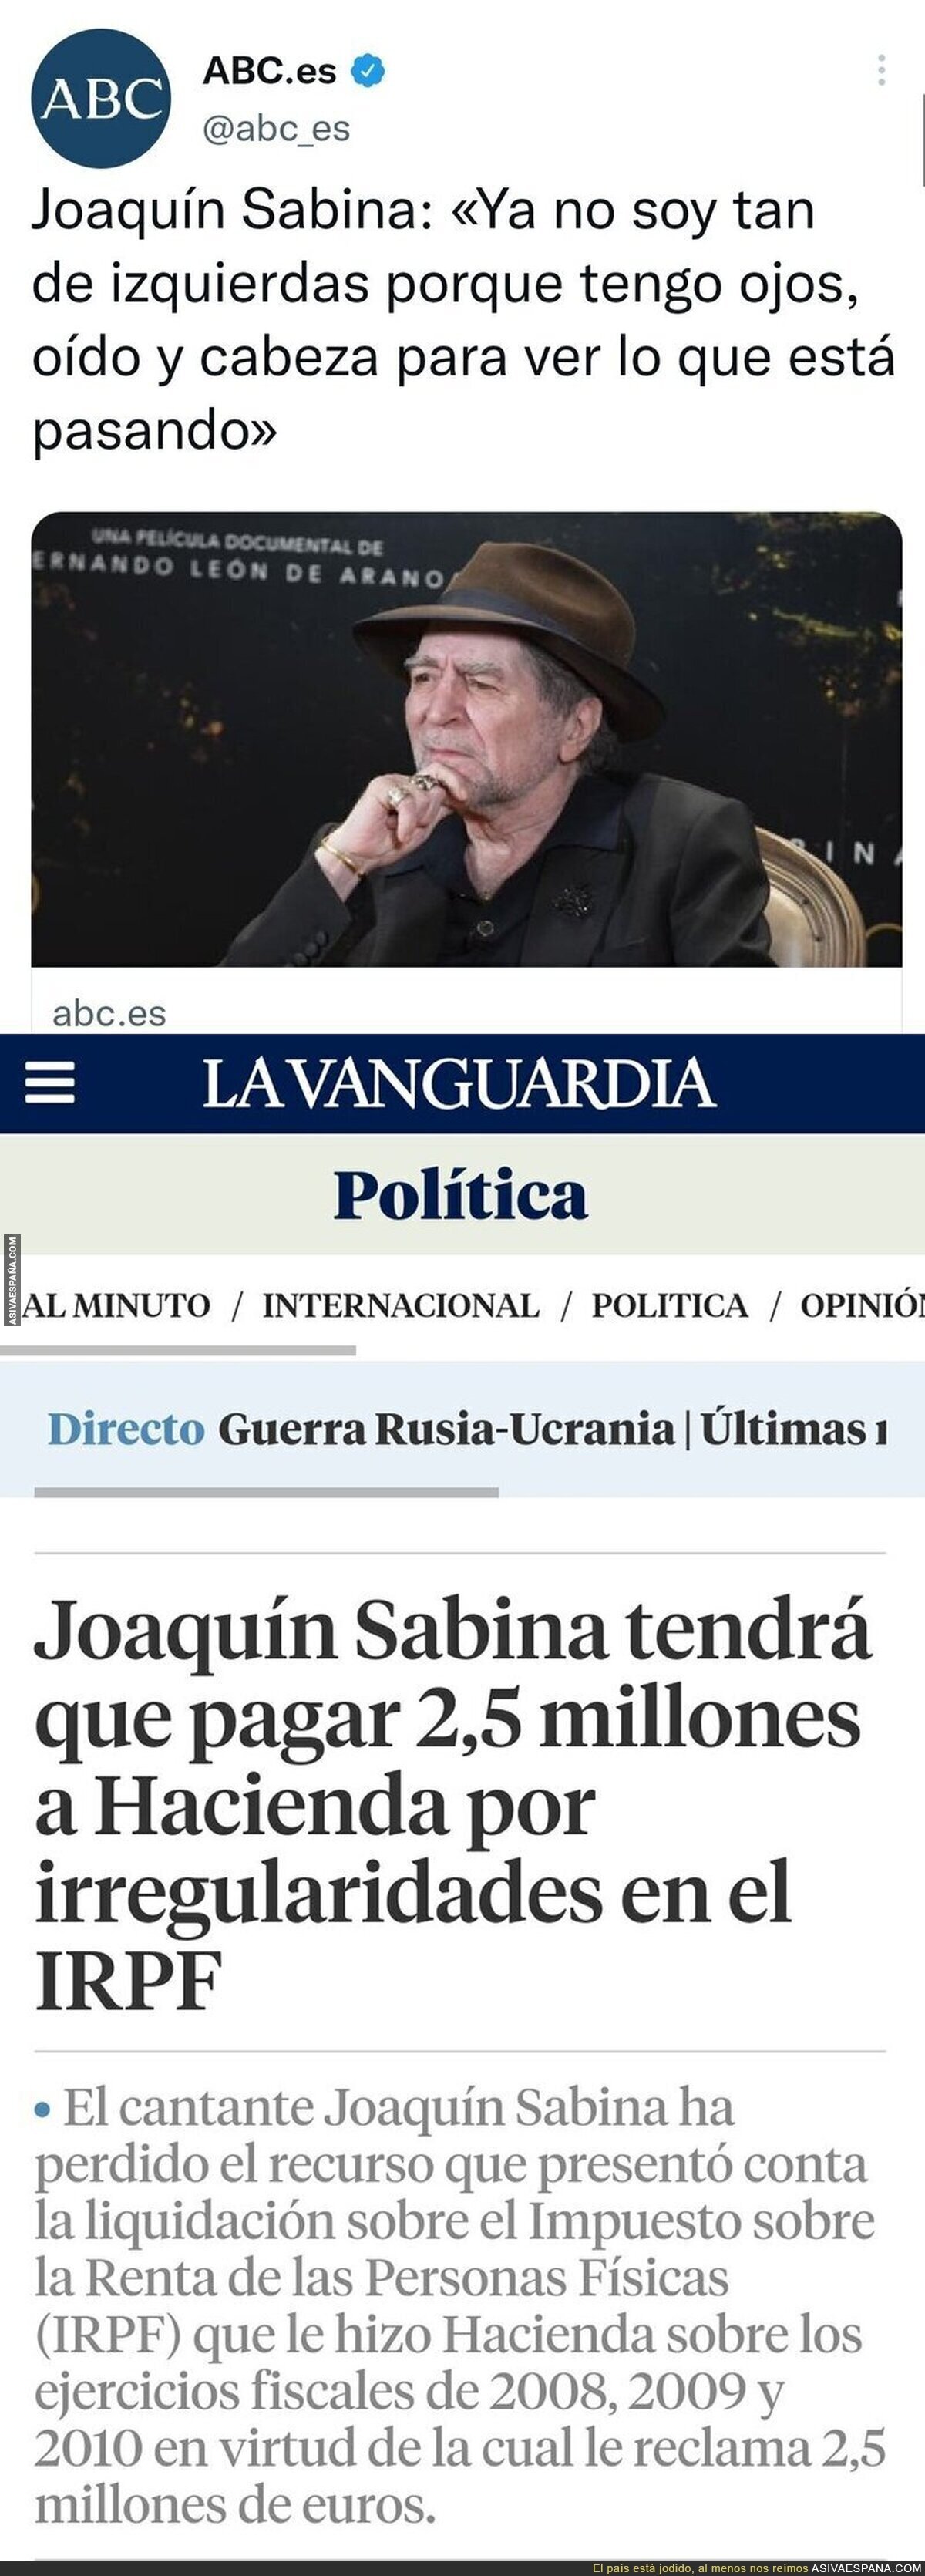 La noticia que confirma que Joaquín Sabina no es de izquierdas